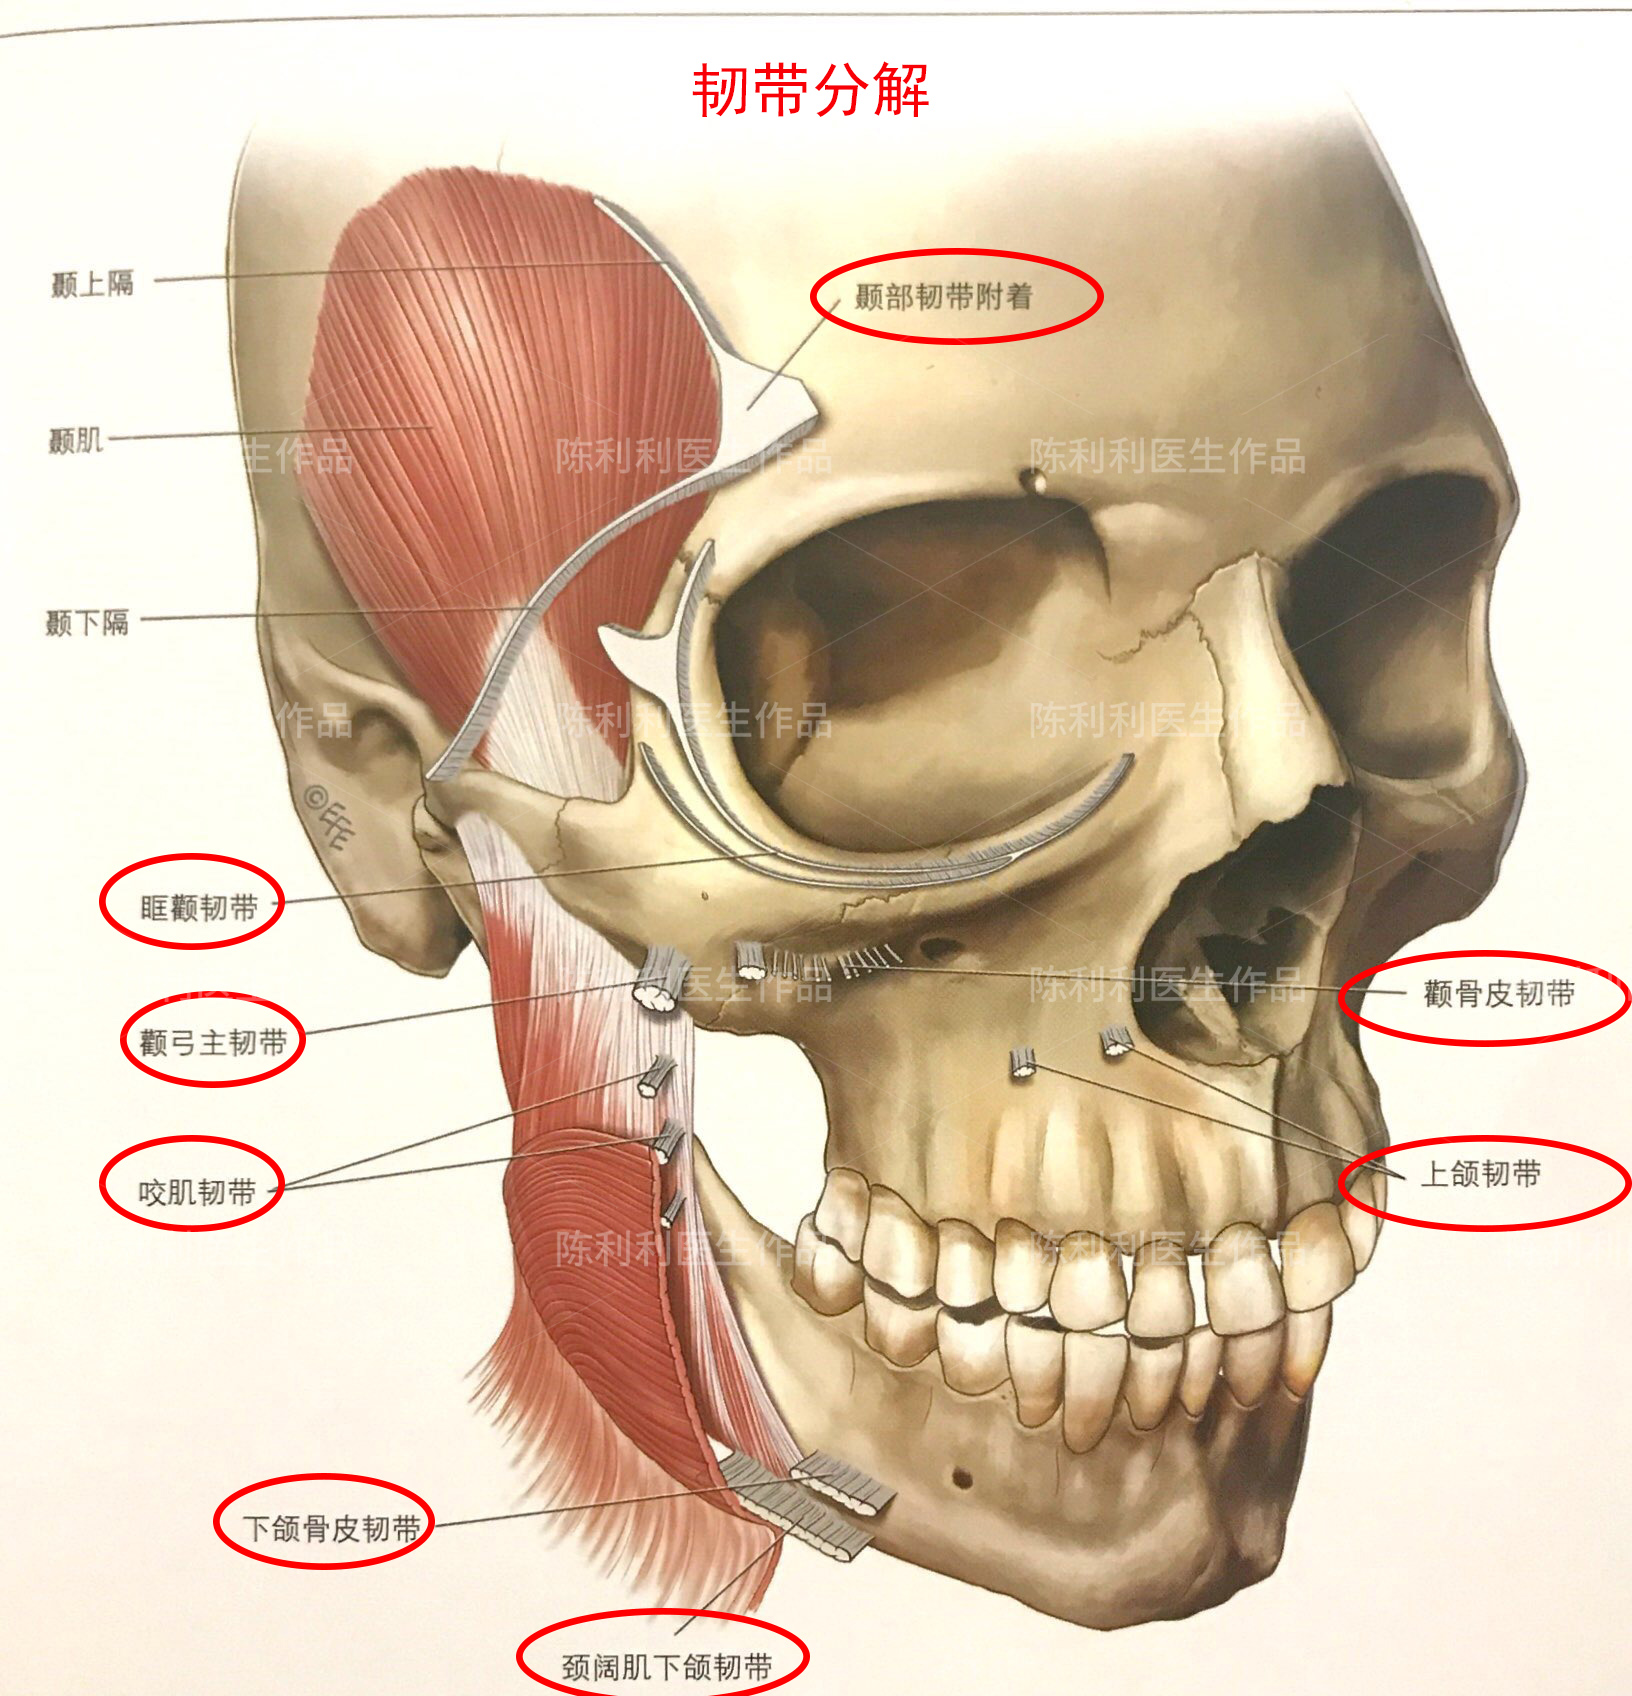 皮肤,皮下组织,面部表浅肌筋膜系统,支持韧带和间隙,骨膜和深筋膜